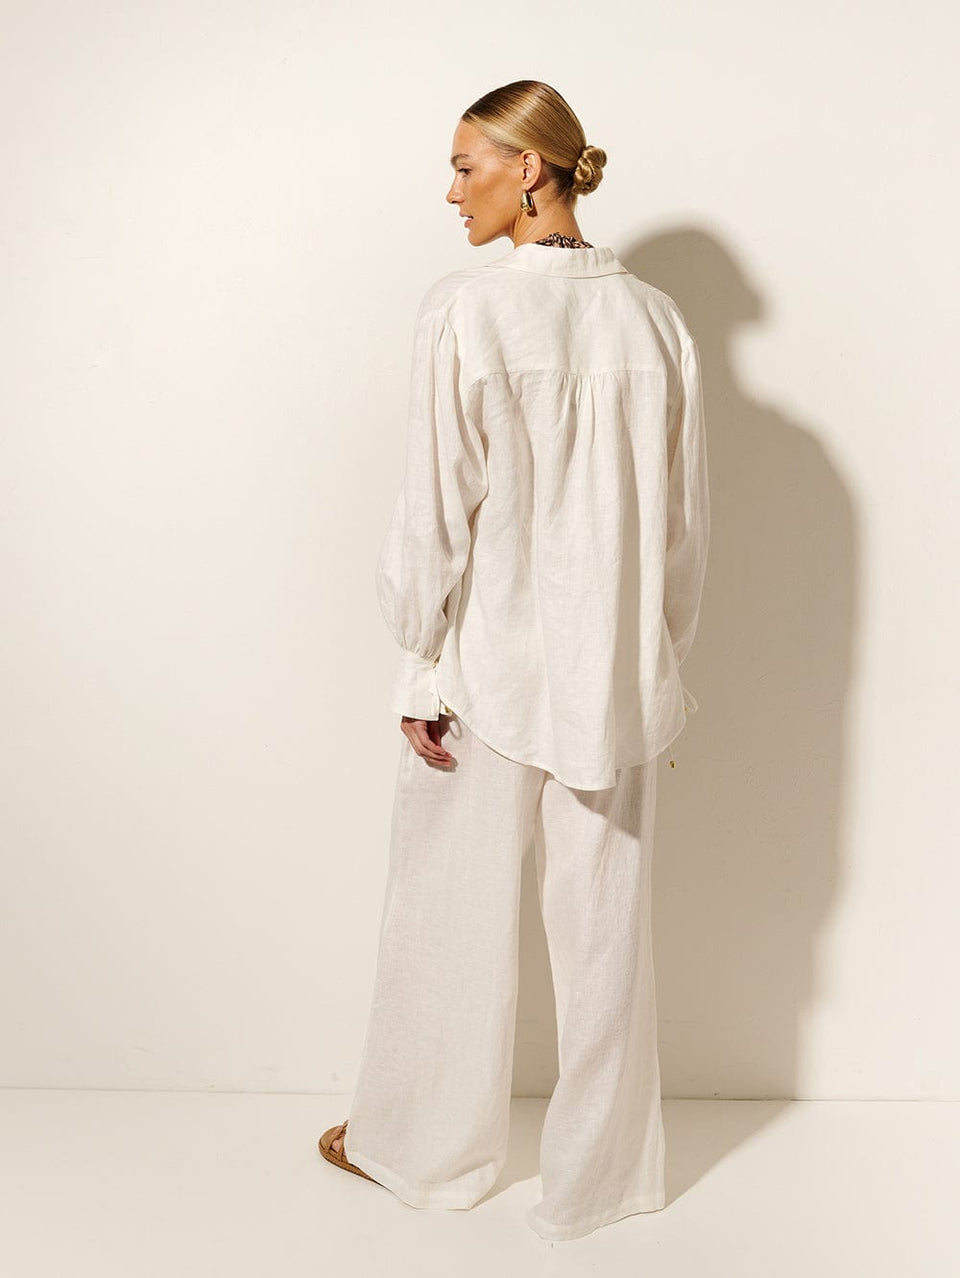 Jacana Pant KIVARI | Model wears ivory linen pant back view